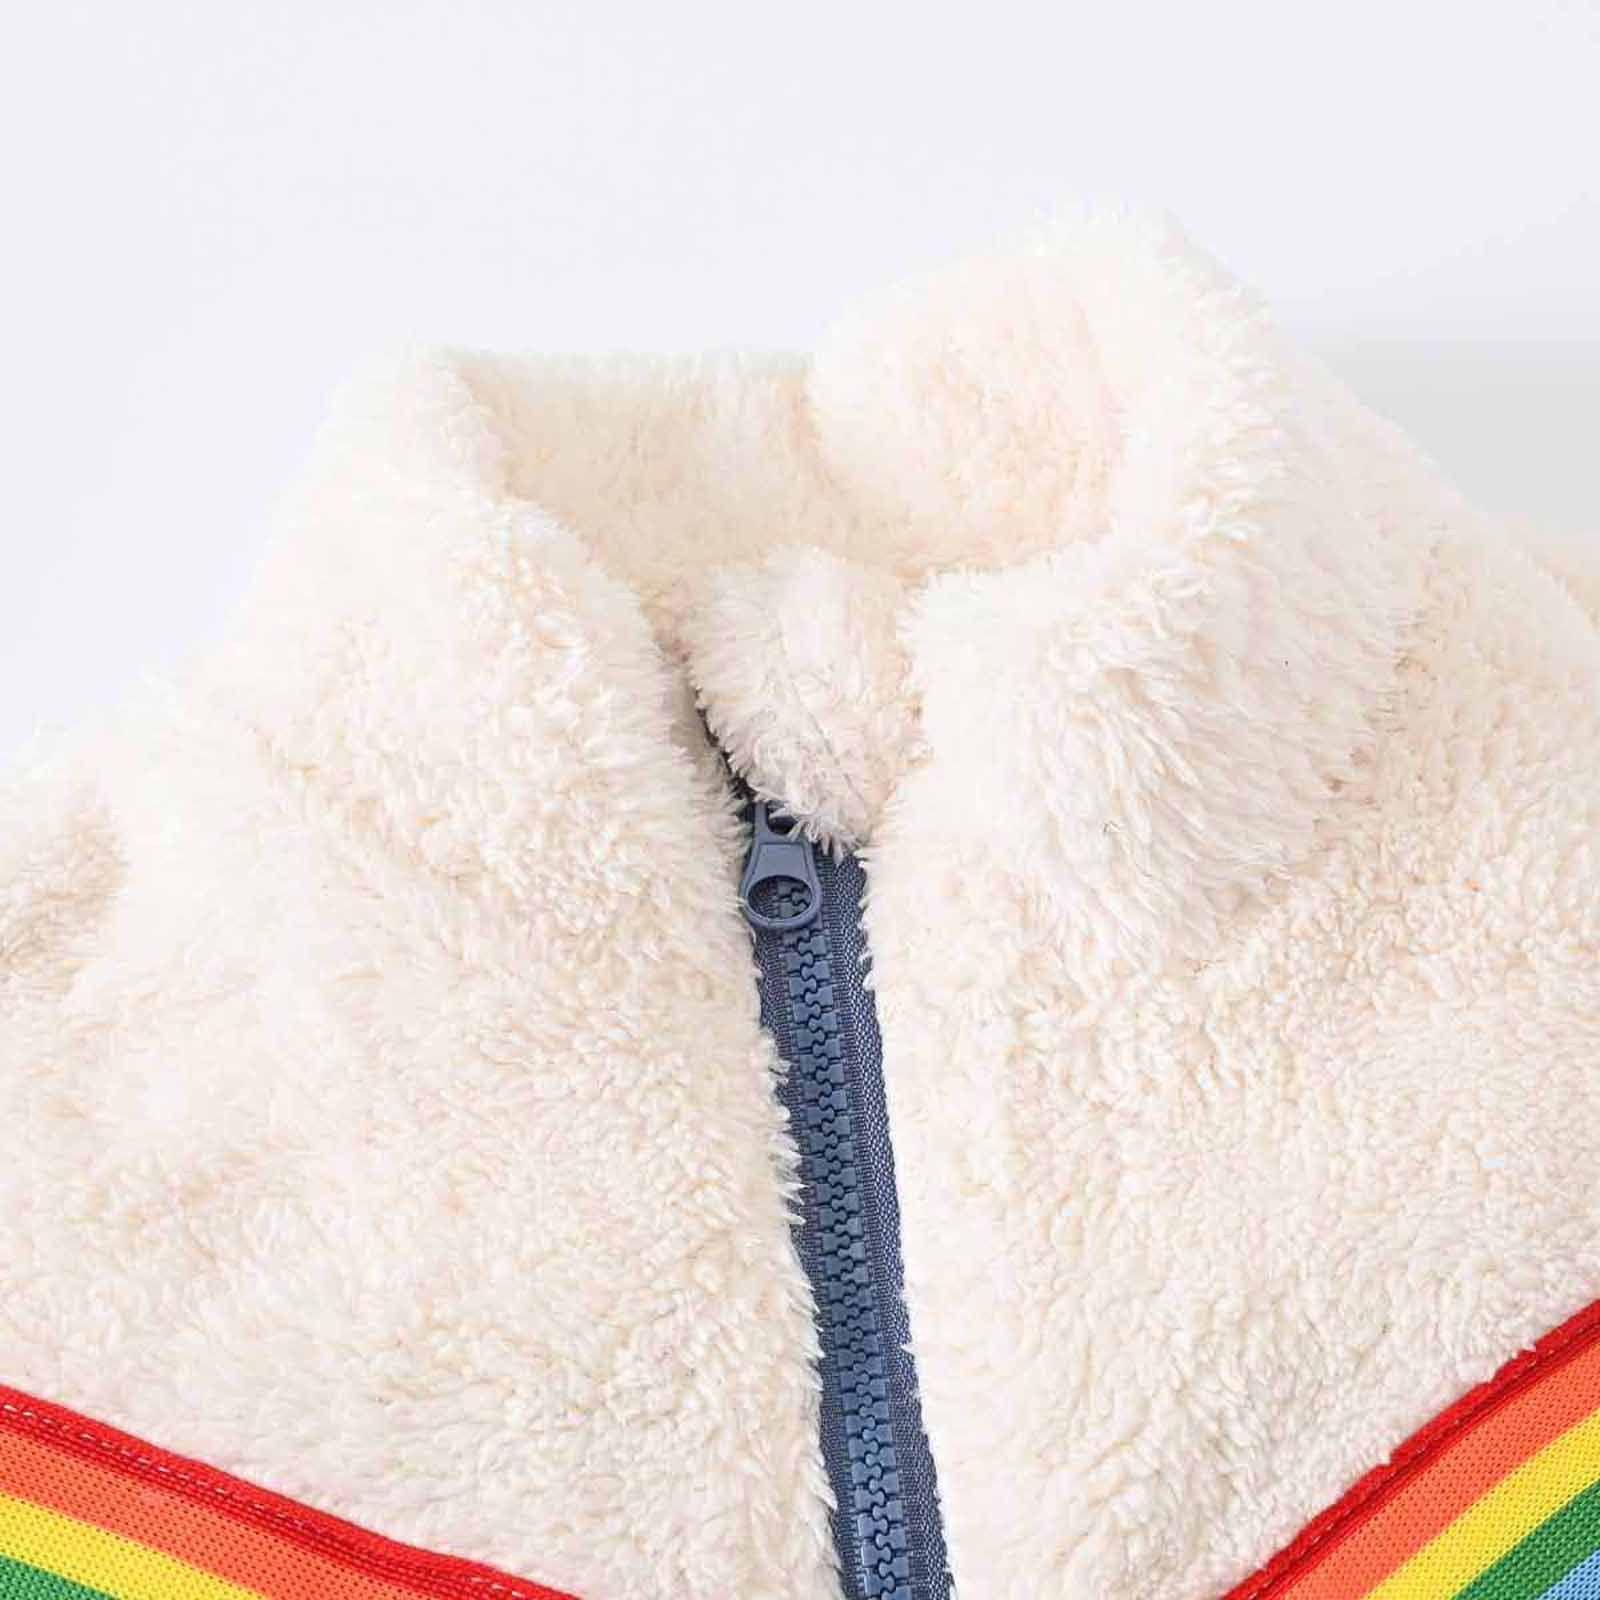 YYDGH Girls Zipper Jacket Fuzzy Sweatshirt Long Sleeve Casual Cozy Fleece Sherpa Outwear Coat Full-Zip Rainbow Jackets(Blue,4-5 Years) - image 3 of 8